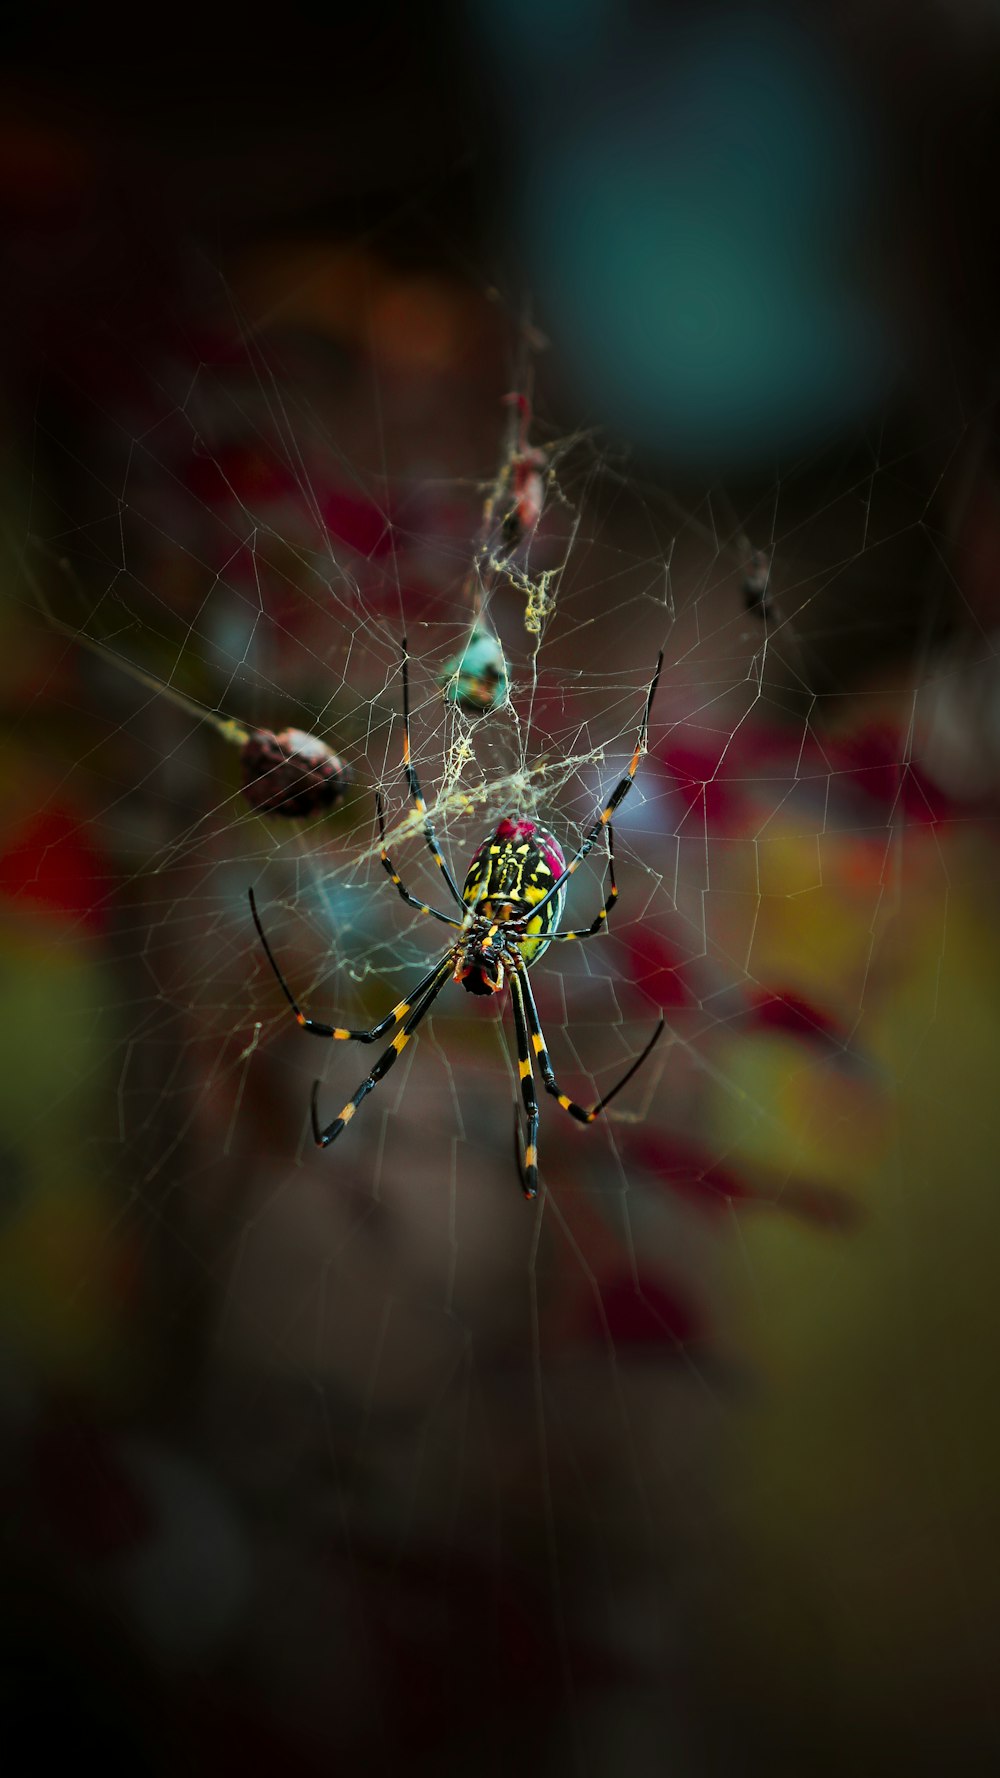 ragno verde e giallo sulla ragnatela nella fotografia ravvicinata durante il giorno